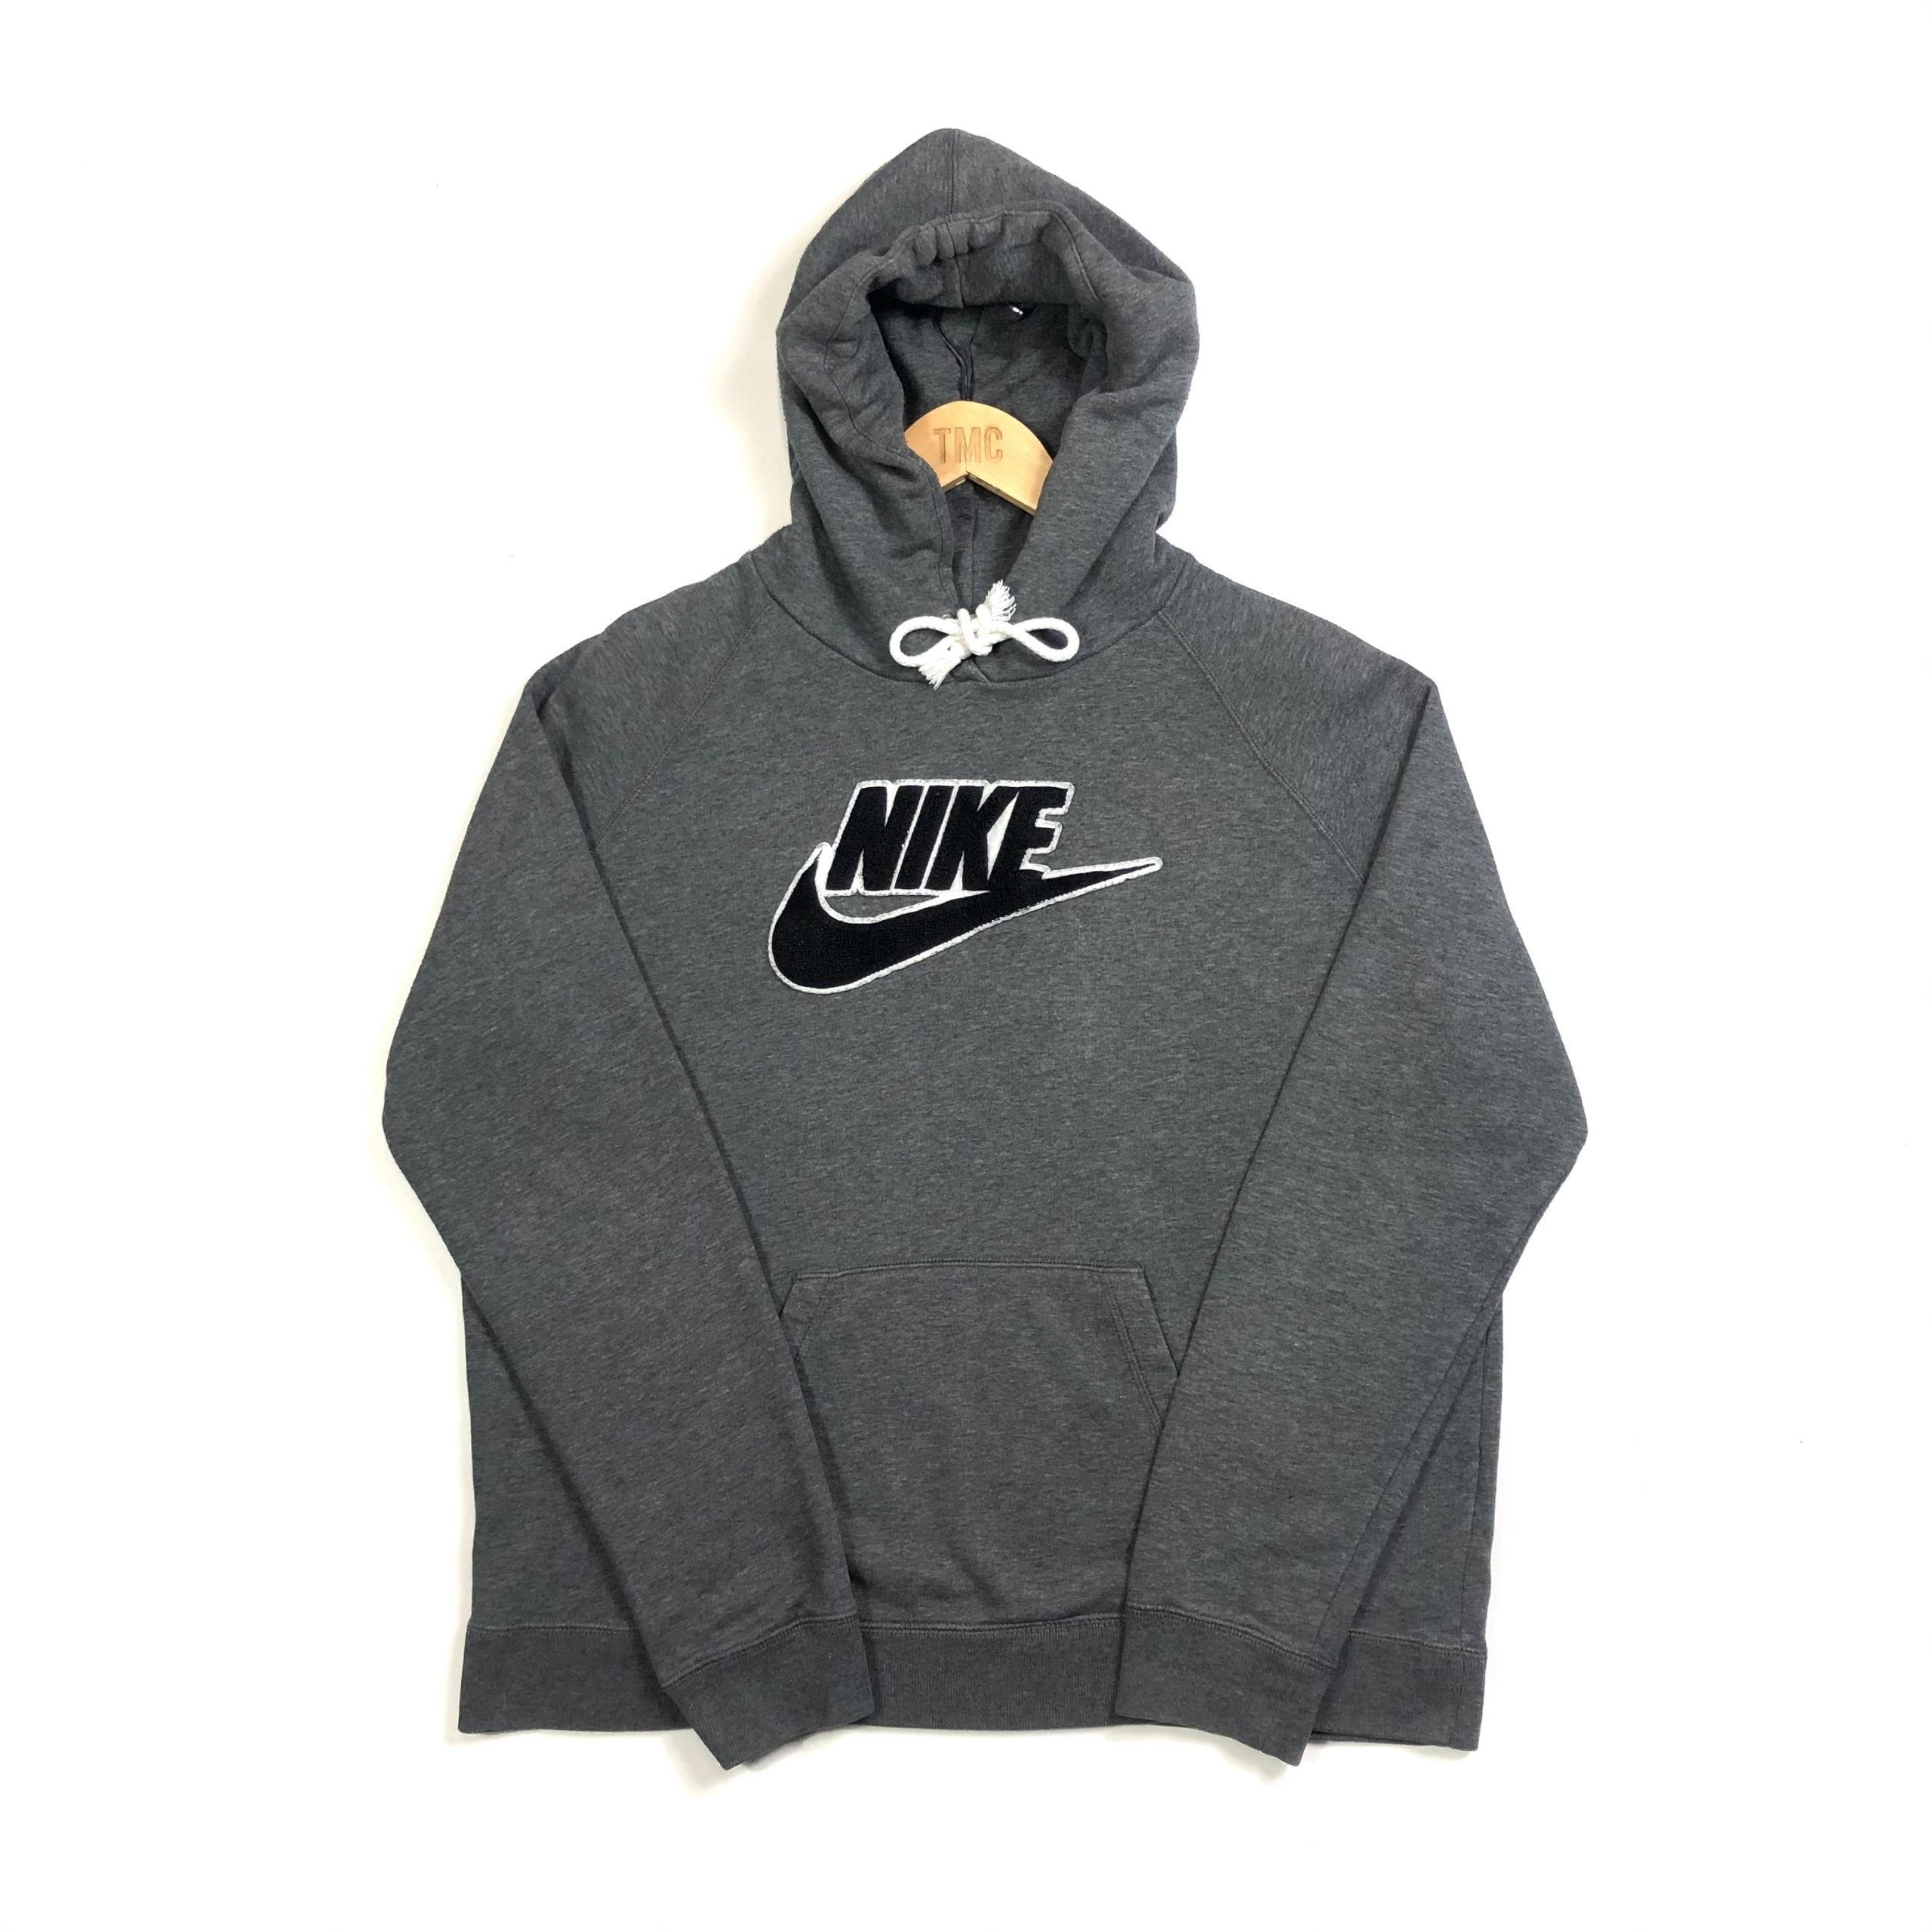 Nike Fleece Spell Out Hoodie - Grey - M - TMC Vintage - Vintage Clothing